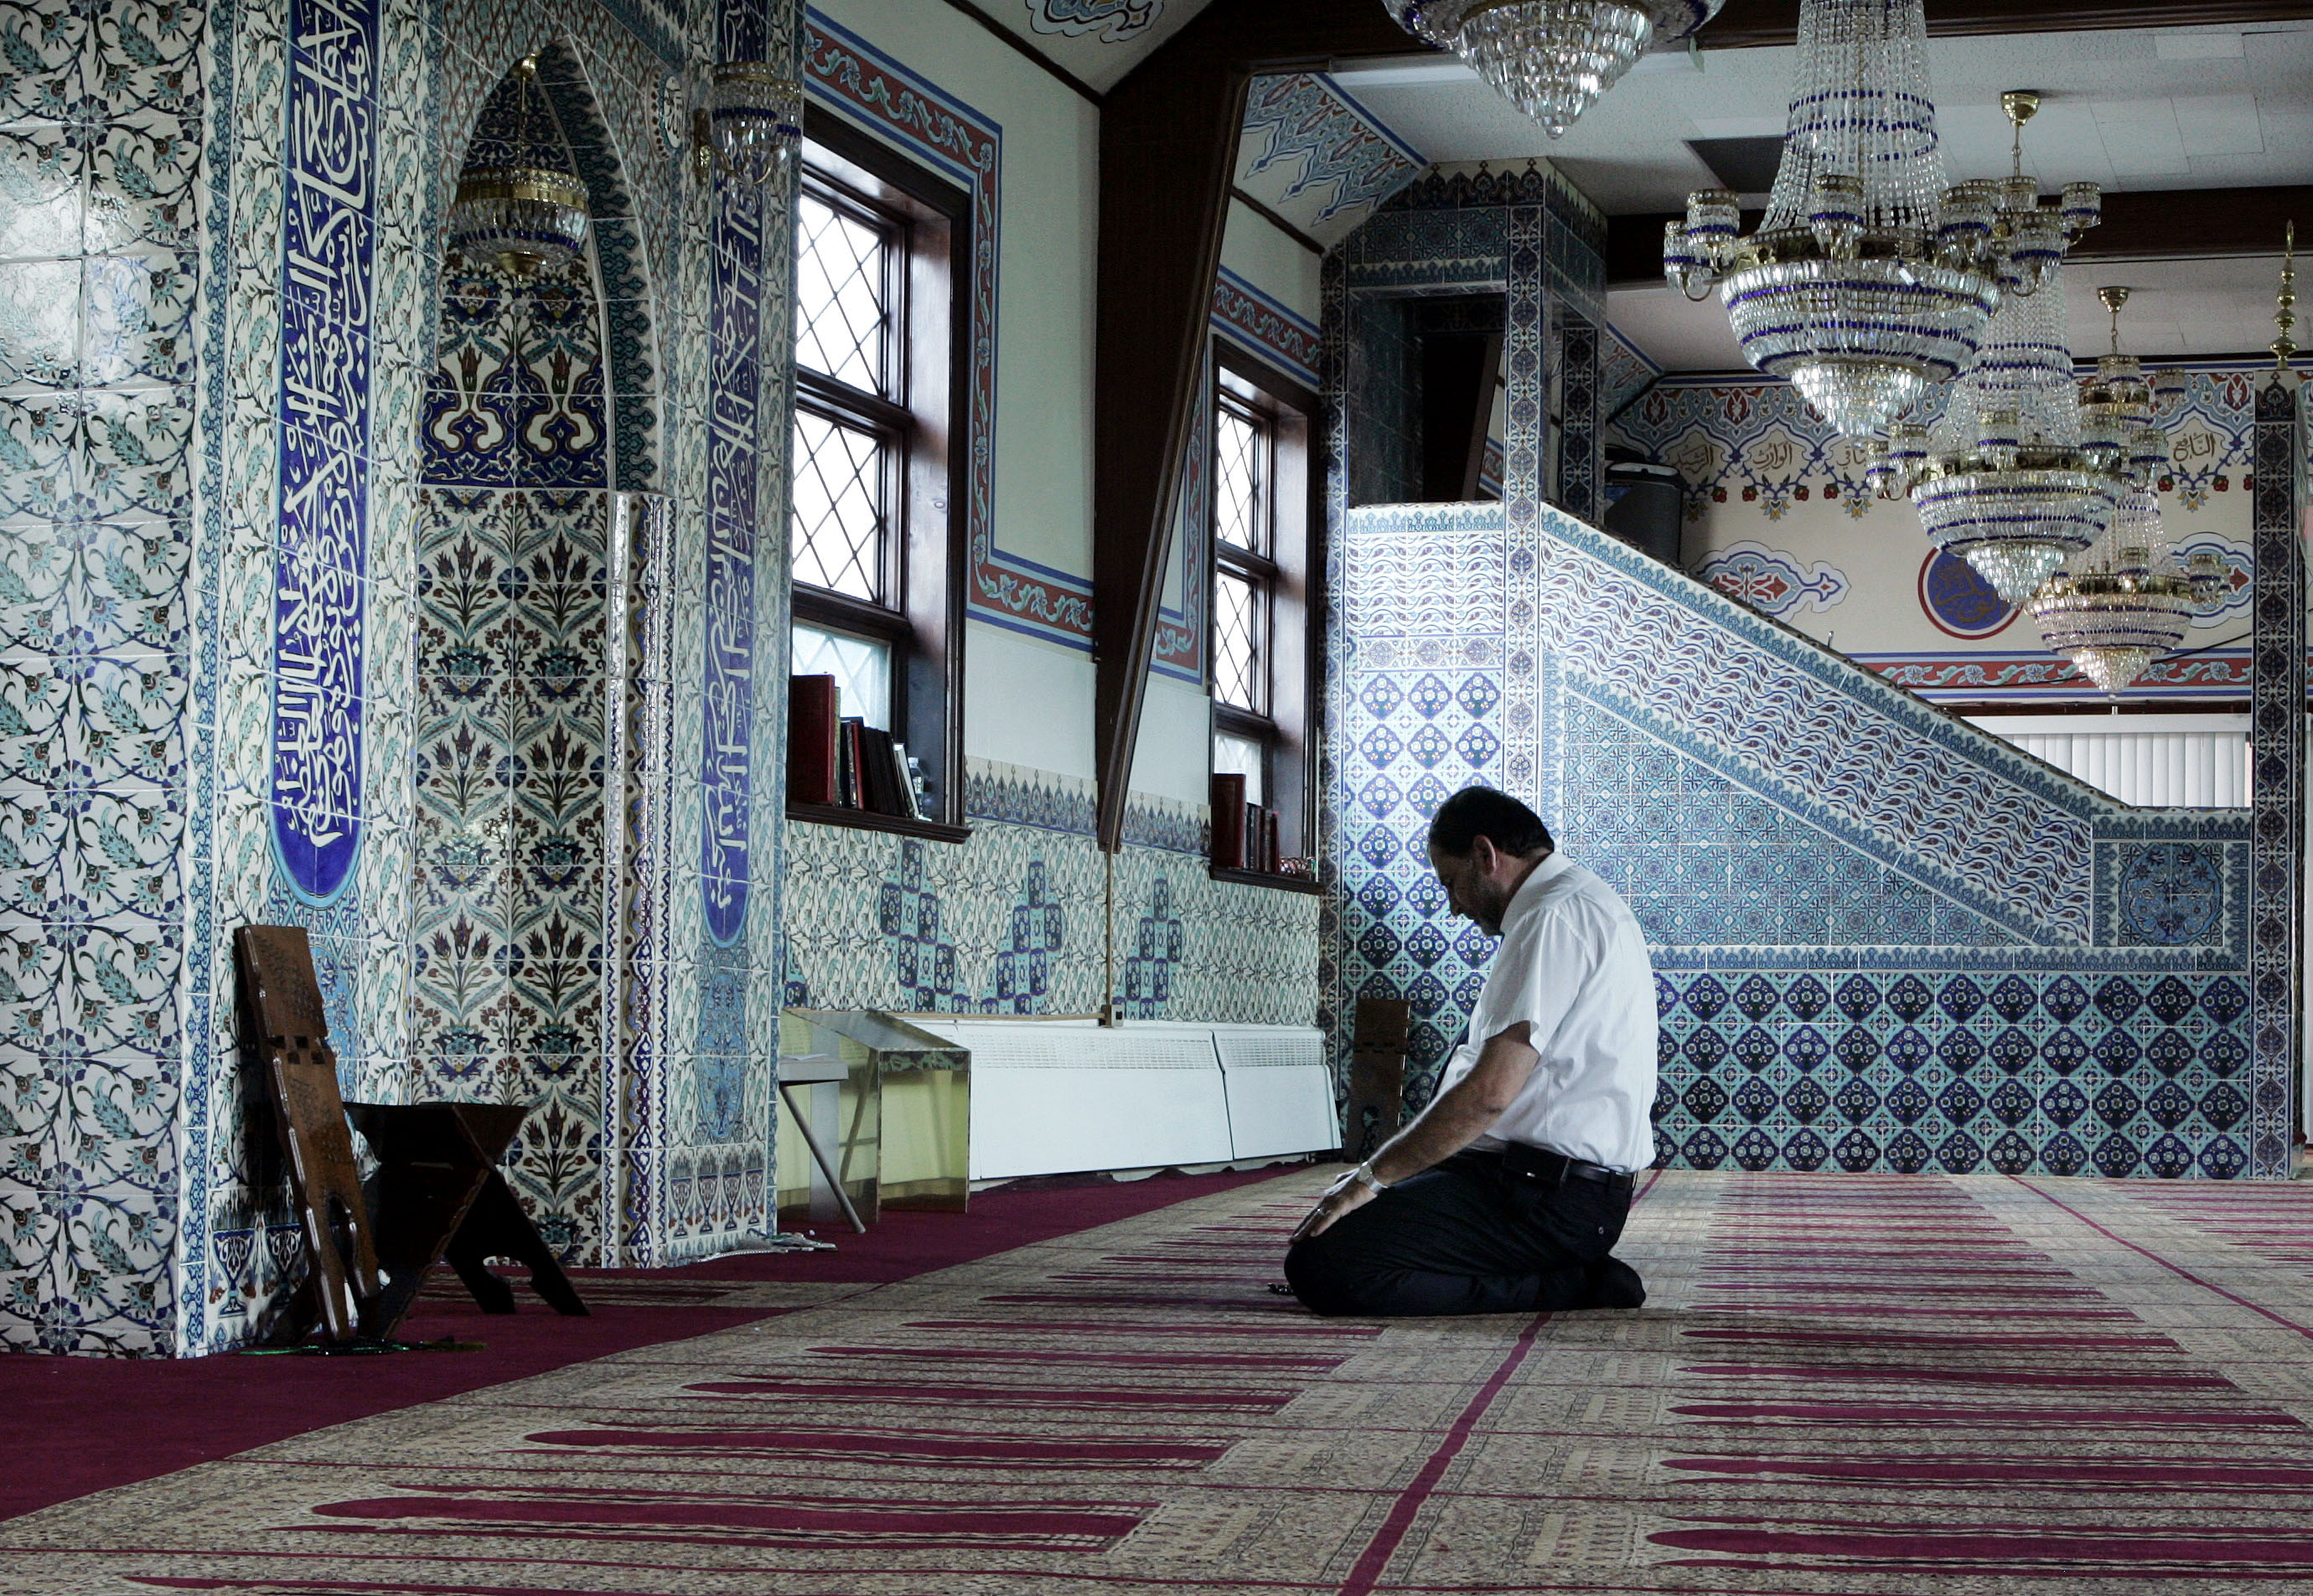 ماقصة الدعاء الذي اعطاه عجوز لرجل في المسجد؟